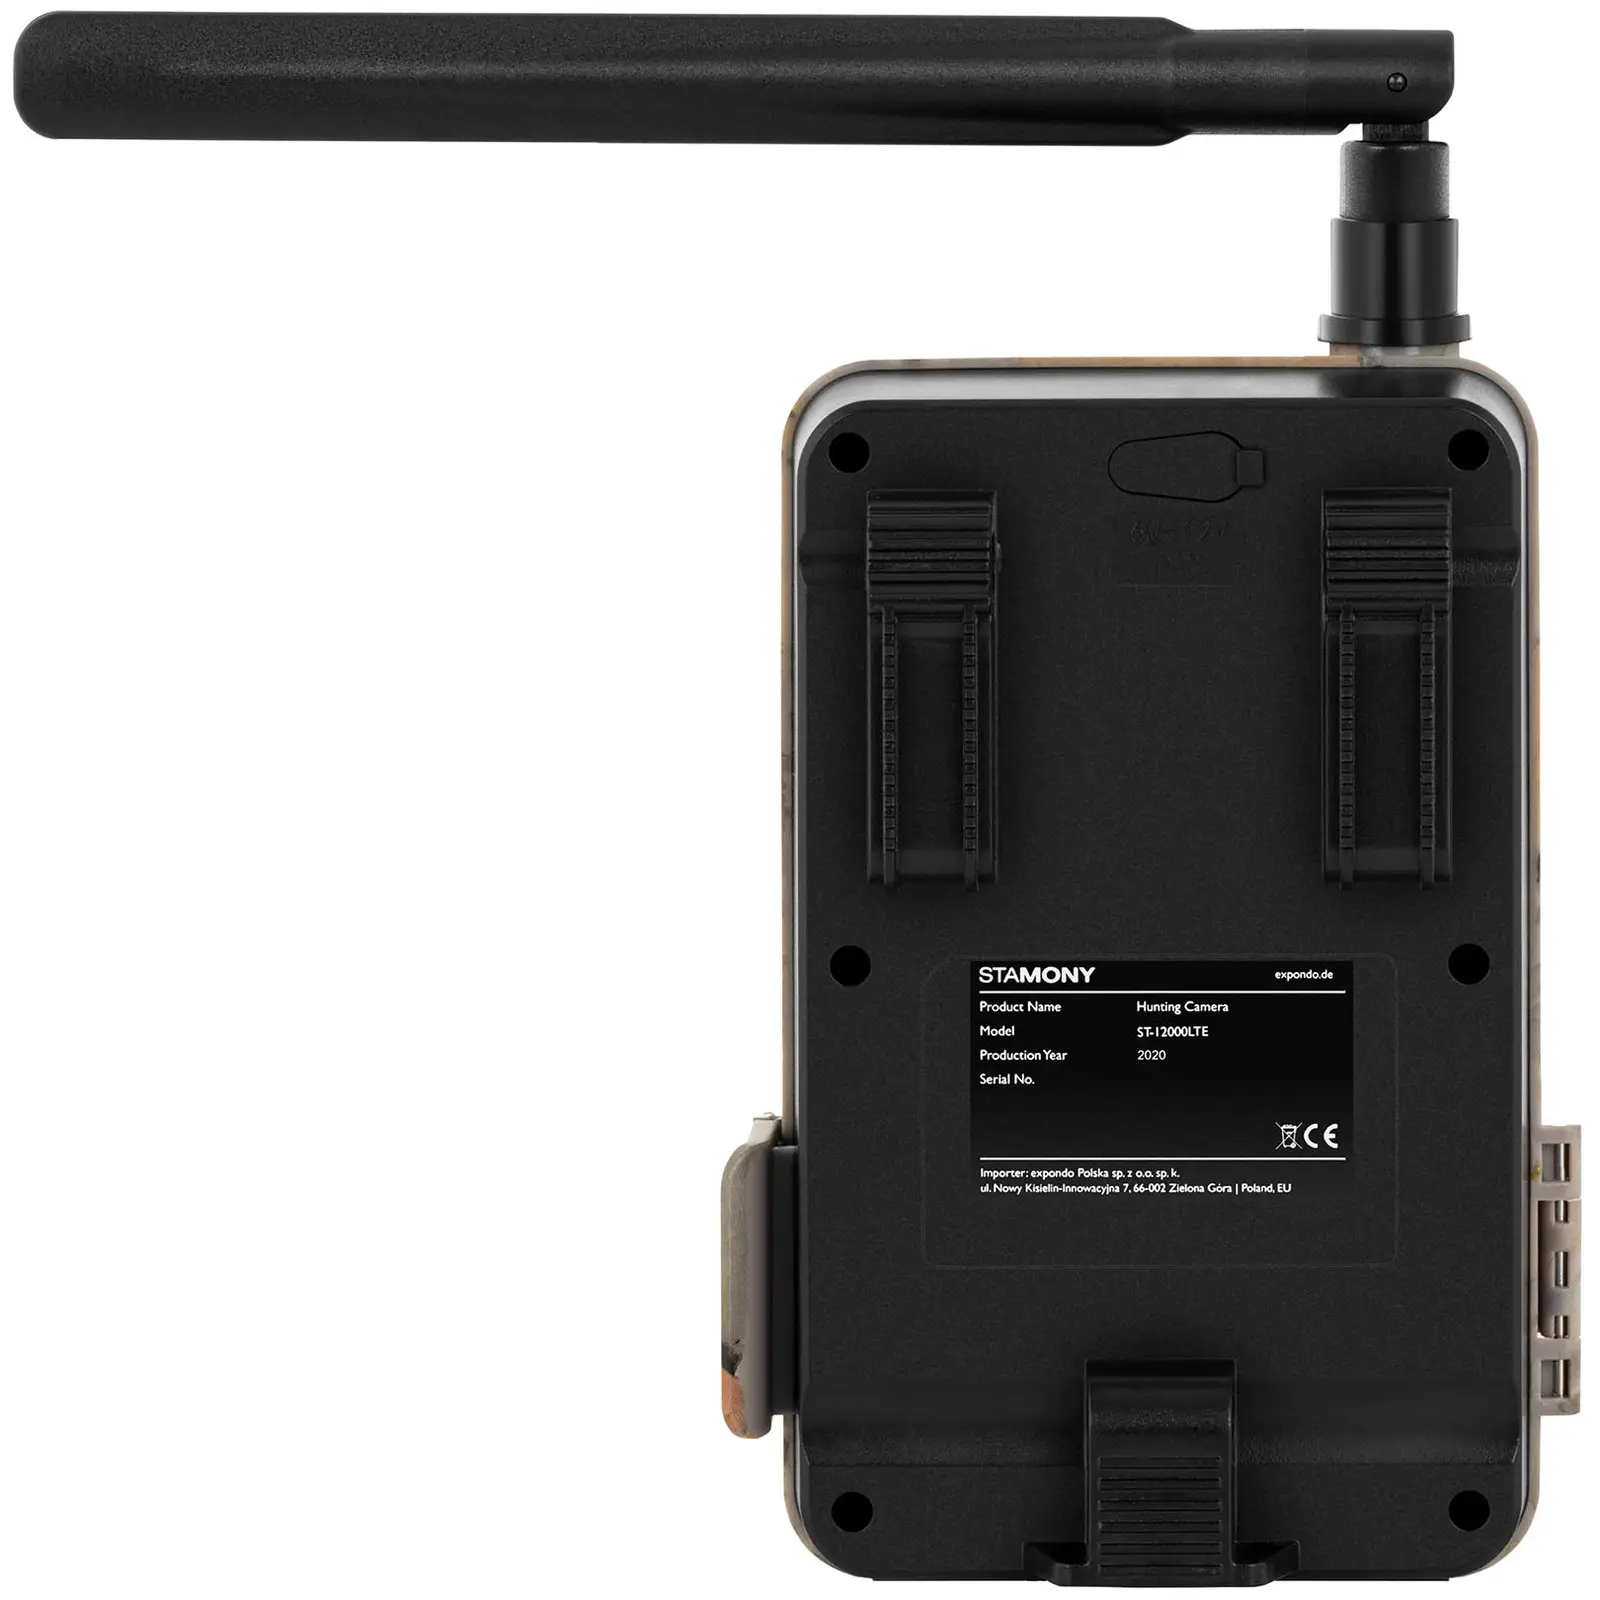 Cámara de caza - 8 MP - Full HD - 44 IR-LED - 20 m - 0,3 s - LTE con amplificador GSM